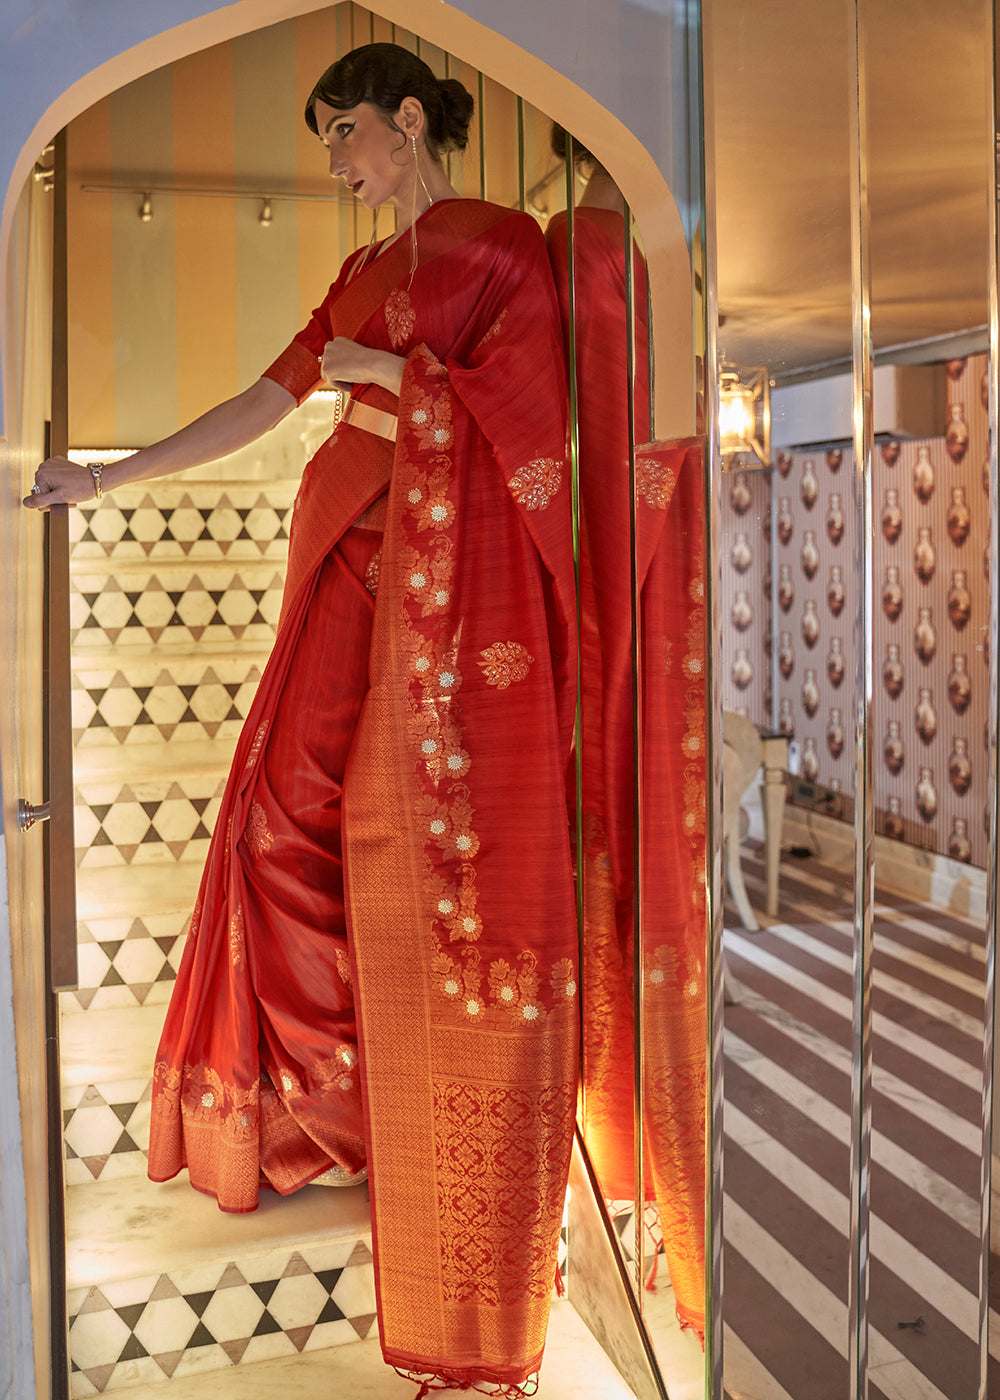 Buy Now Carrot Red Tussar Banarasi Silk Designer Saree Online in USA, UK, Canada & Worldwide at Empress Clothing. 